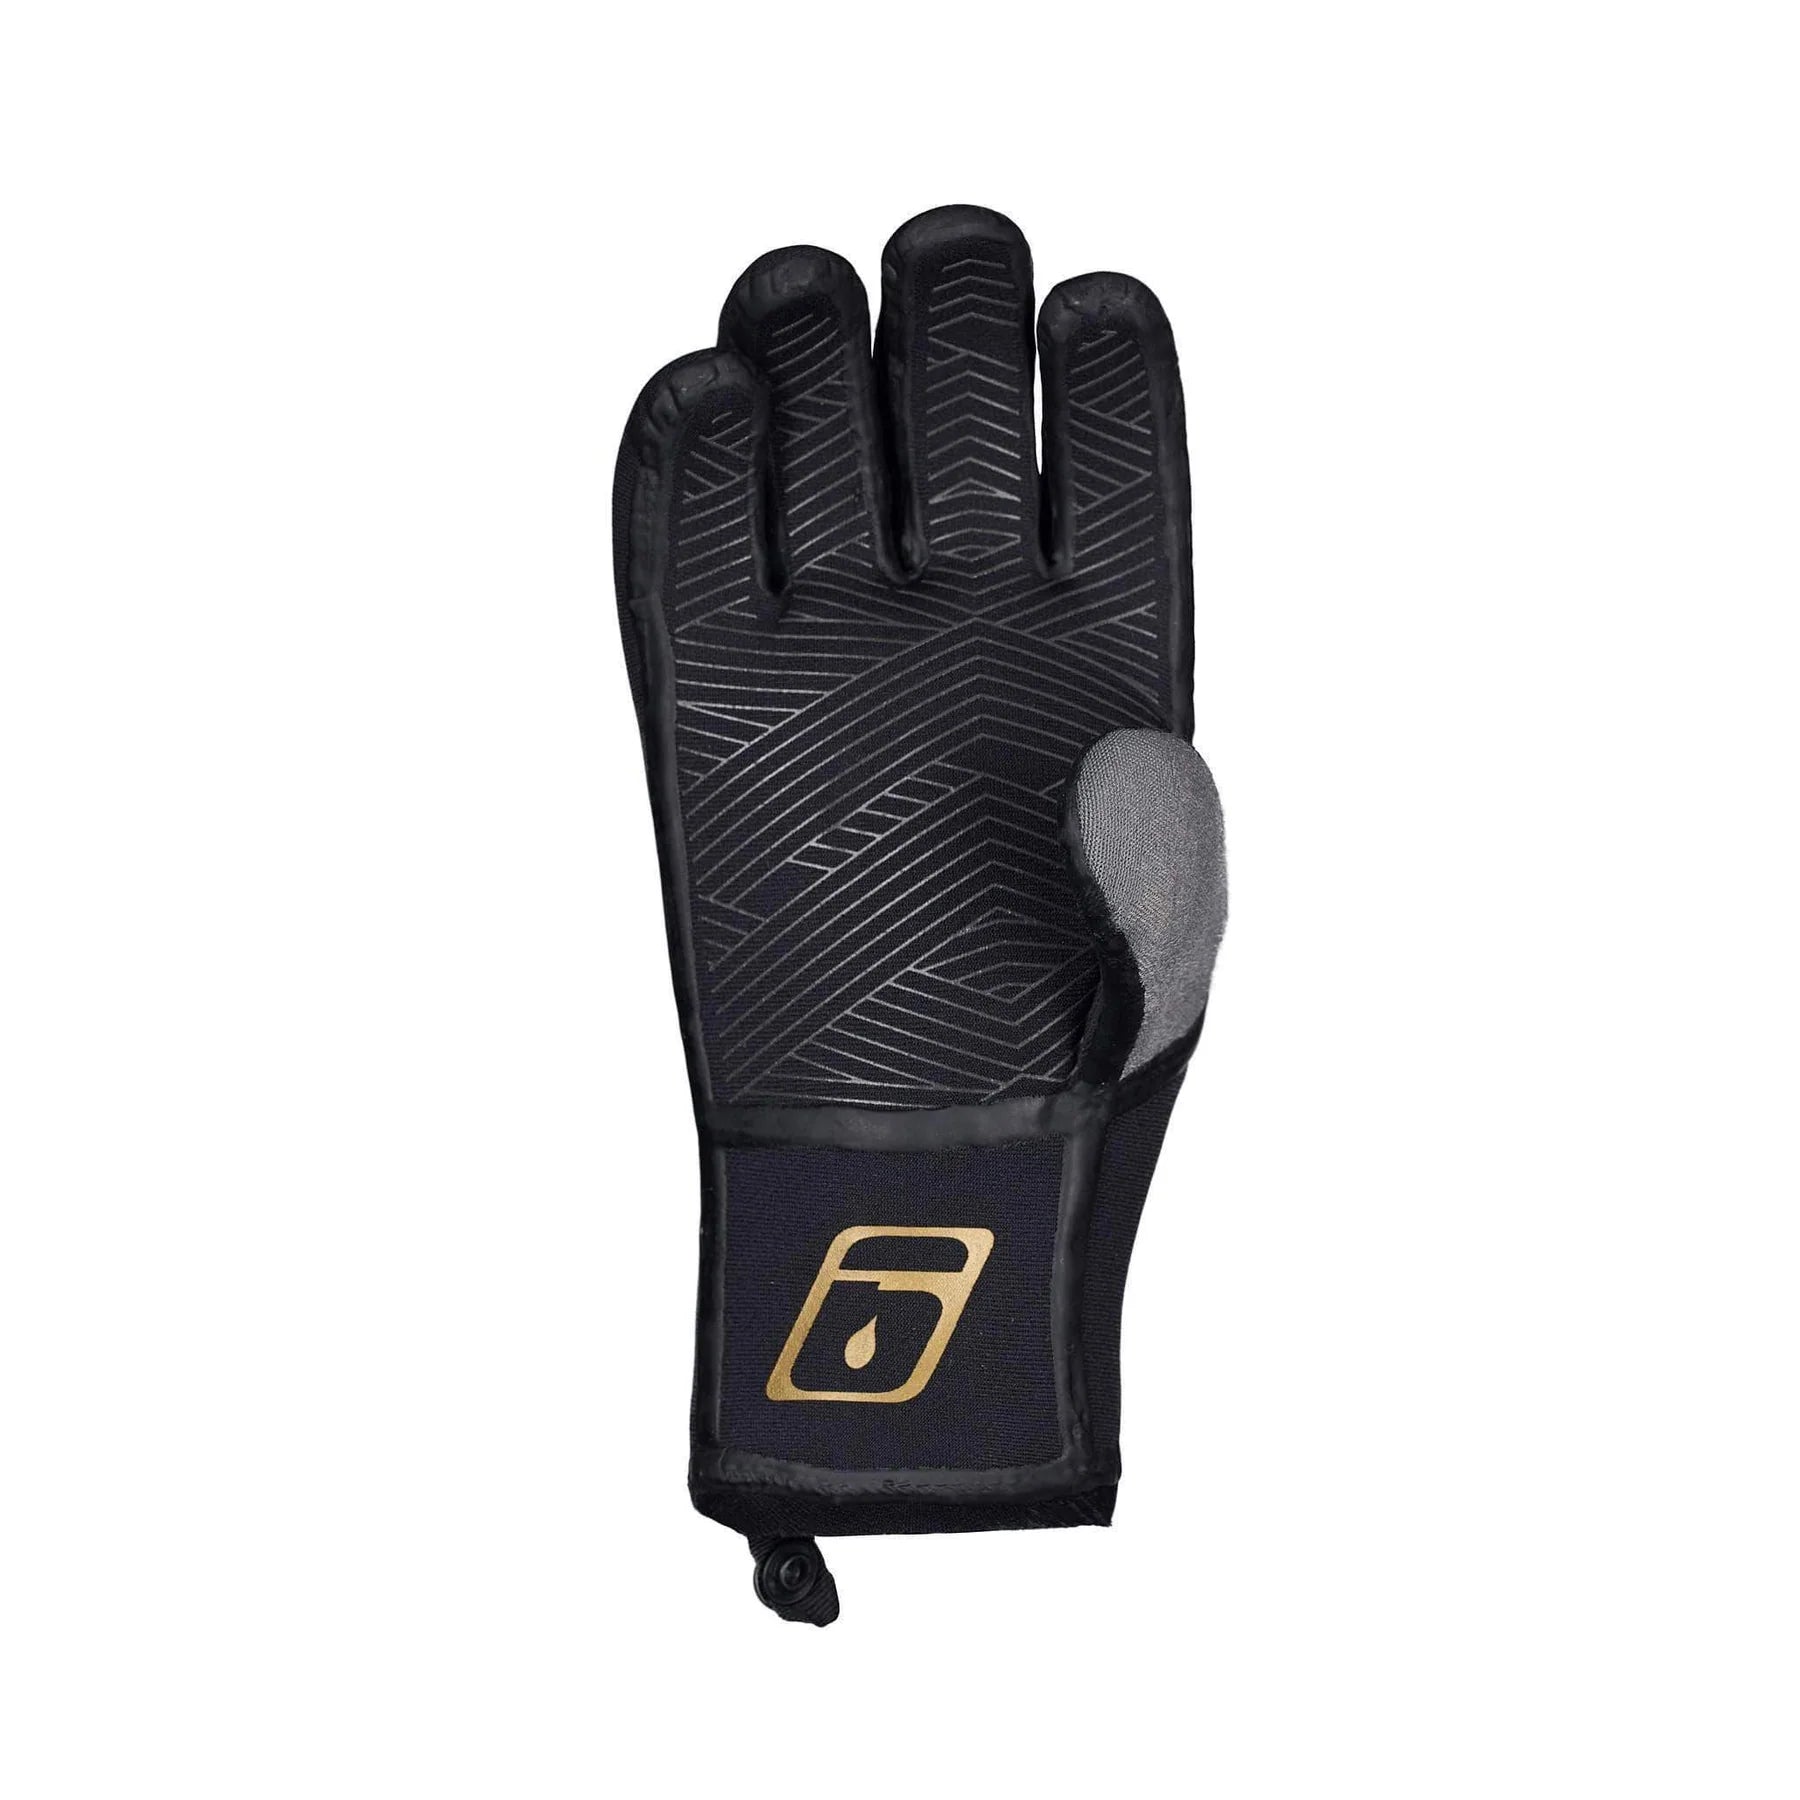 Level Six Granite Neoprene Glove